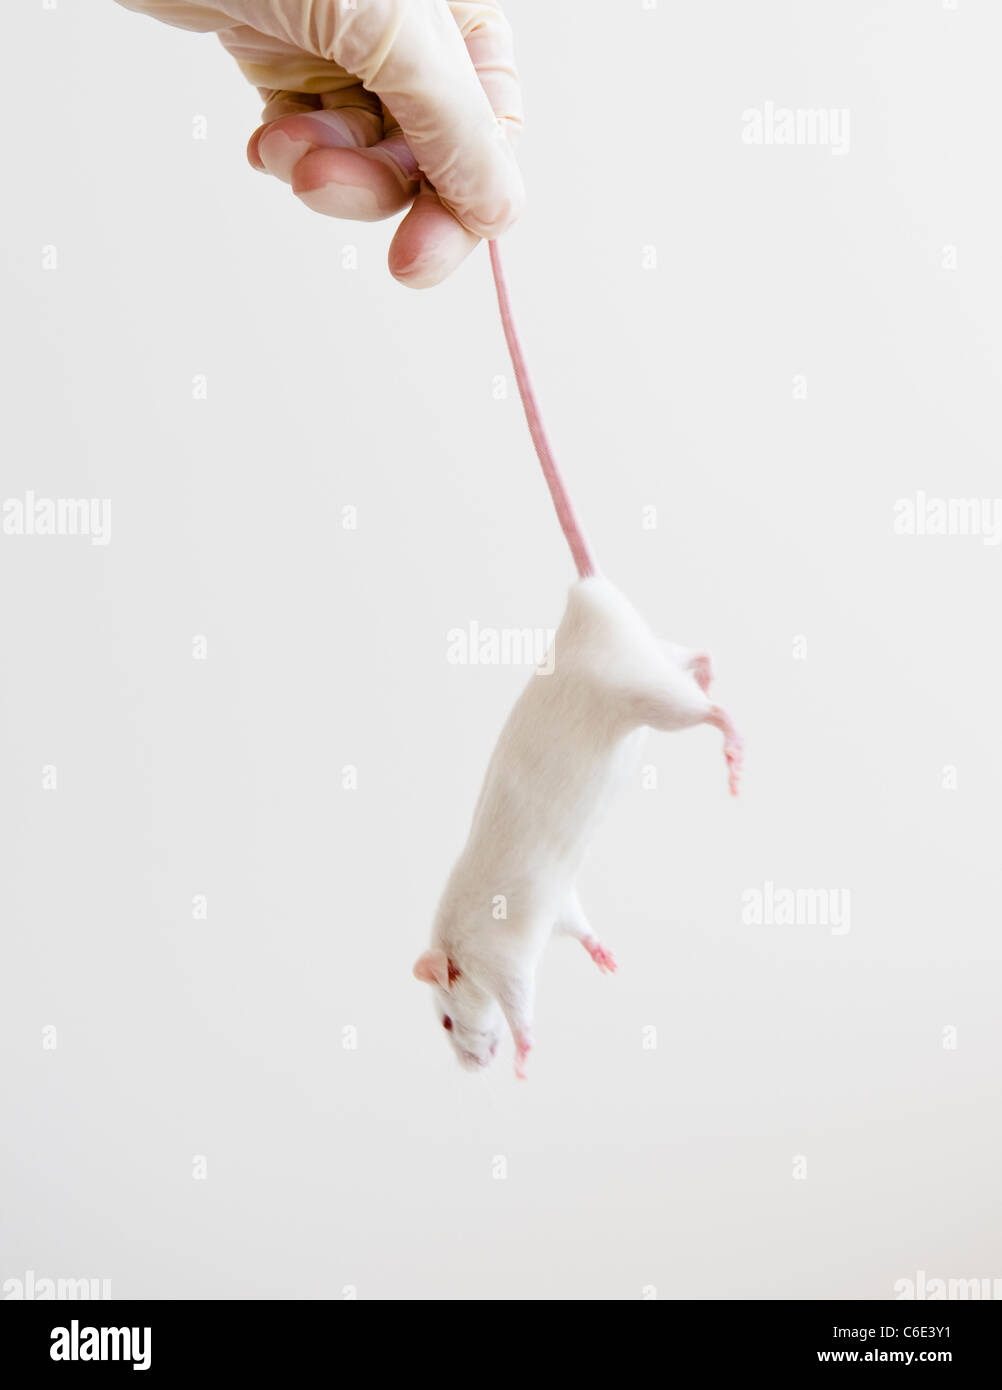 Studio colpo di mano nel guanto tenendo premuto il mouse bianco Foto Stock